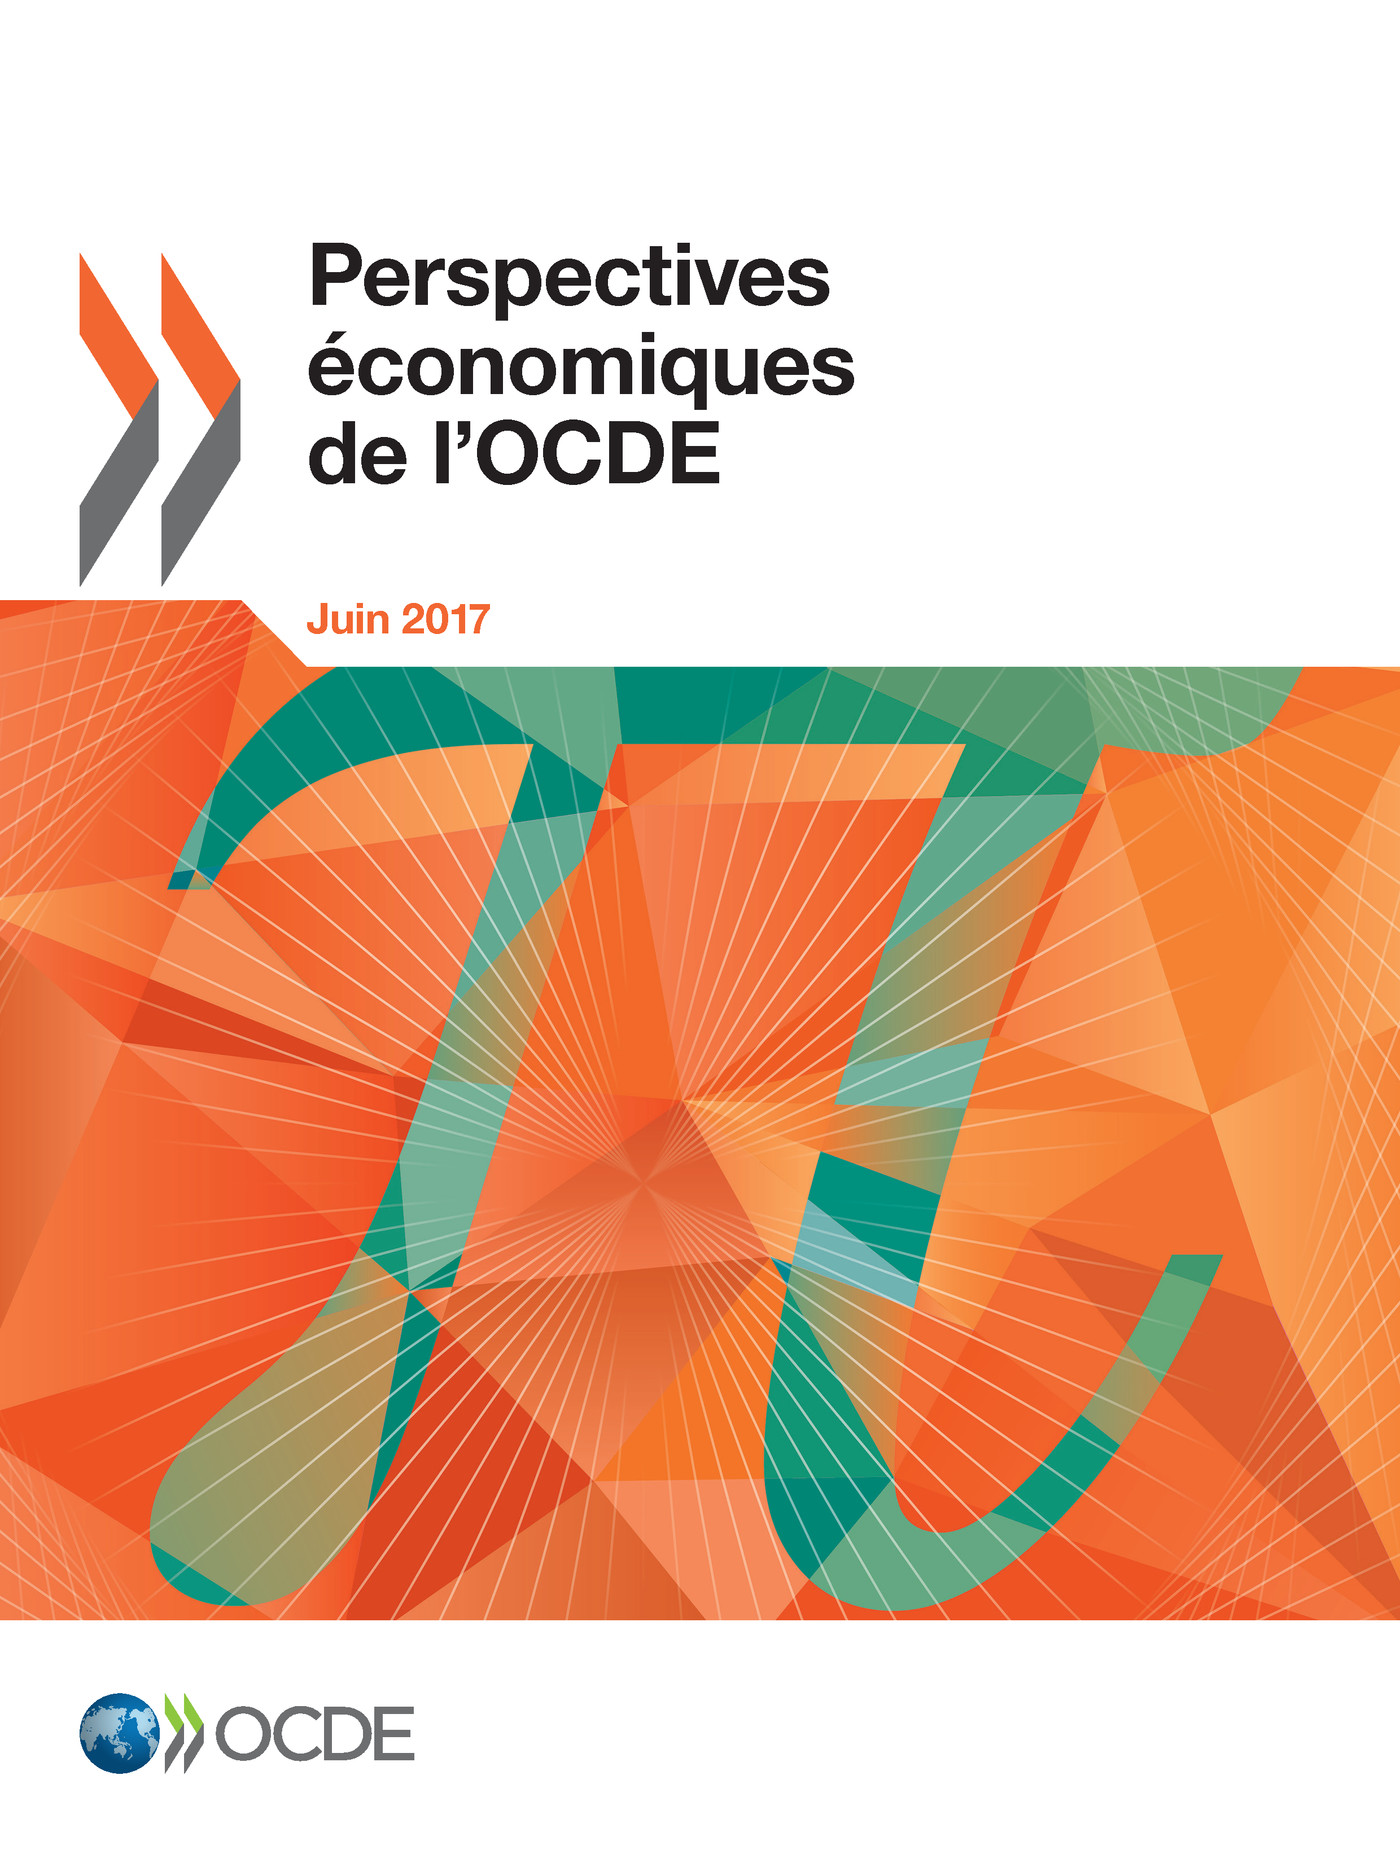 Perspectives économiques de l'OCDE, Volume 2017 Numéro 1 -  Collectif - OCDE / OECD